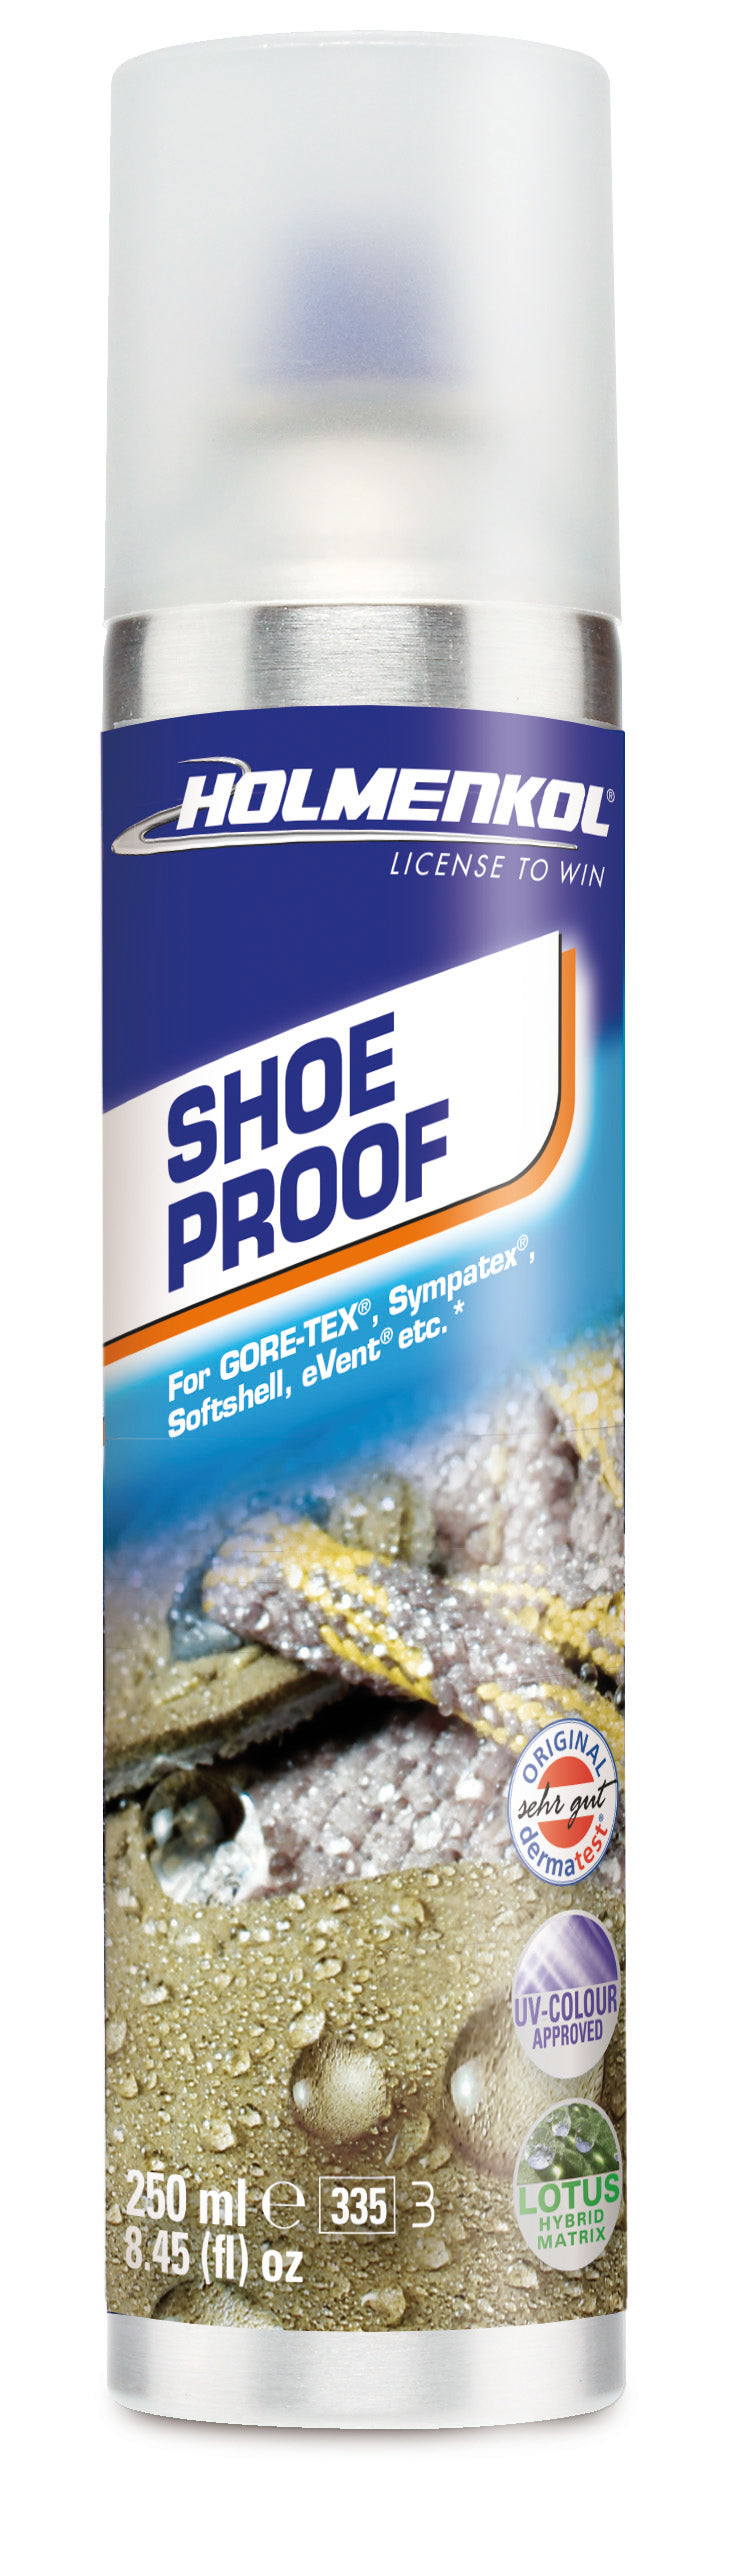 Shoe Proof - [ka(:)rısma] showroom & concept store